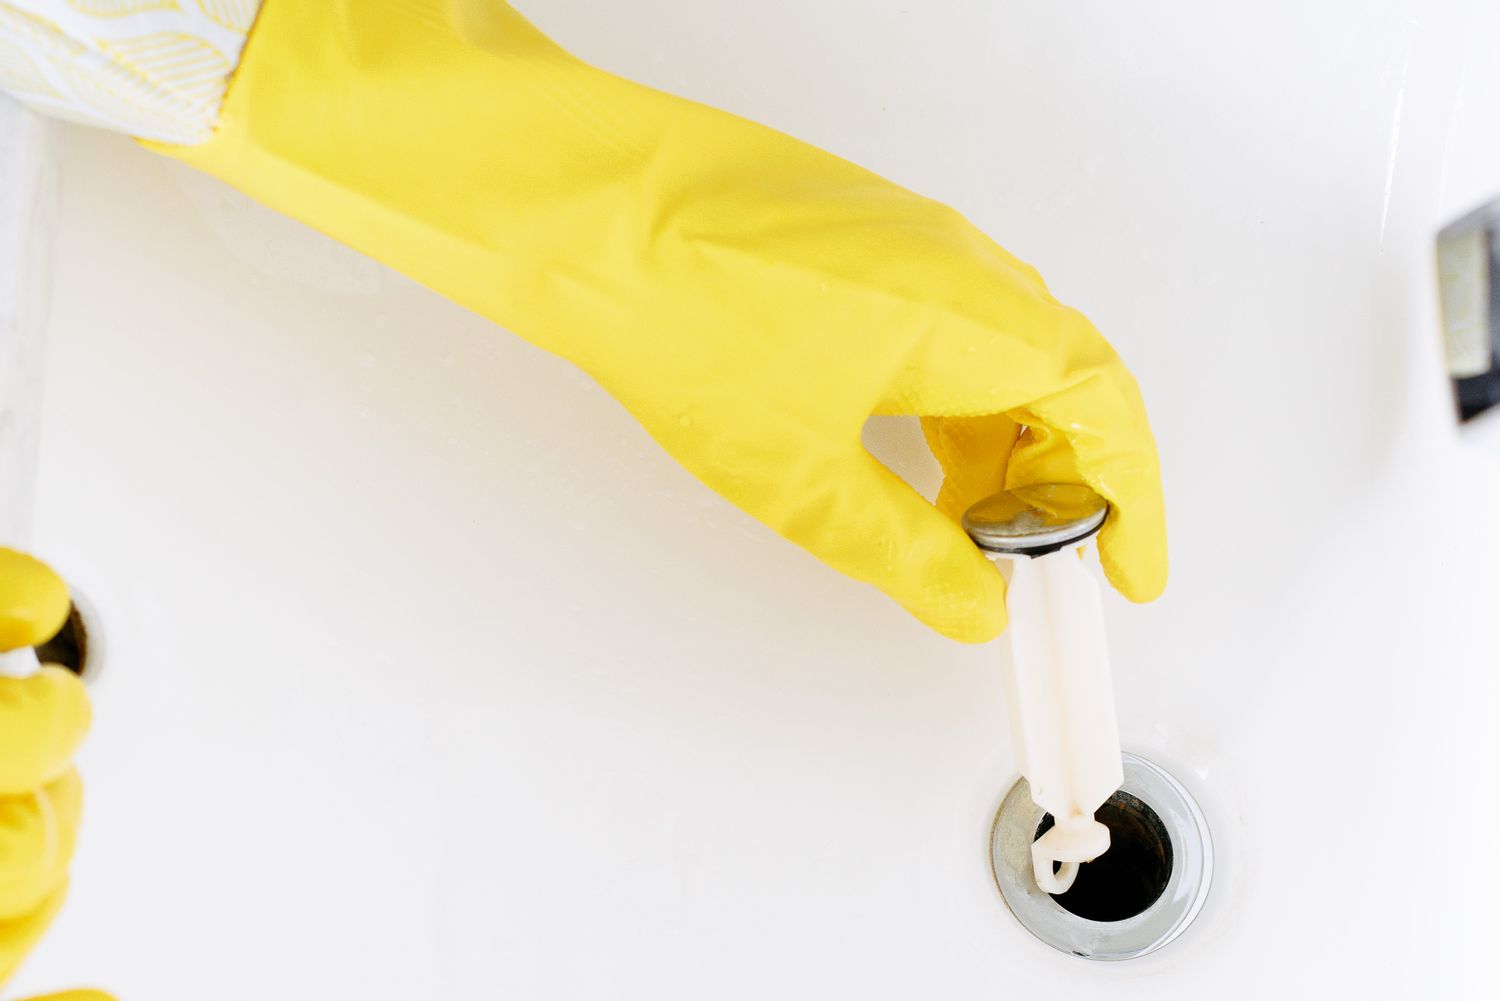 Pop-up retirado del fregadero con guantes amarillos para desatascar el desagüe